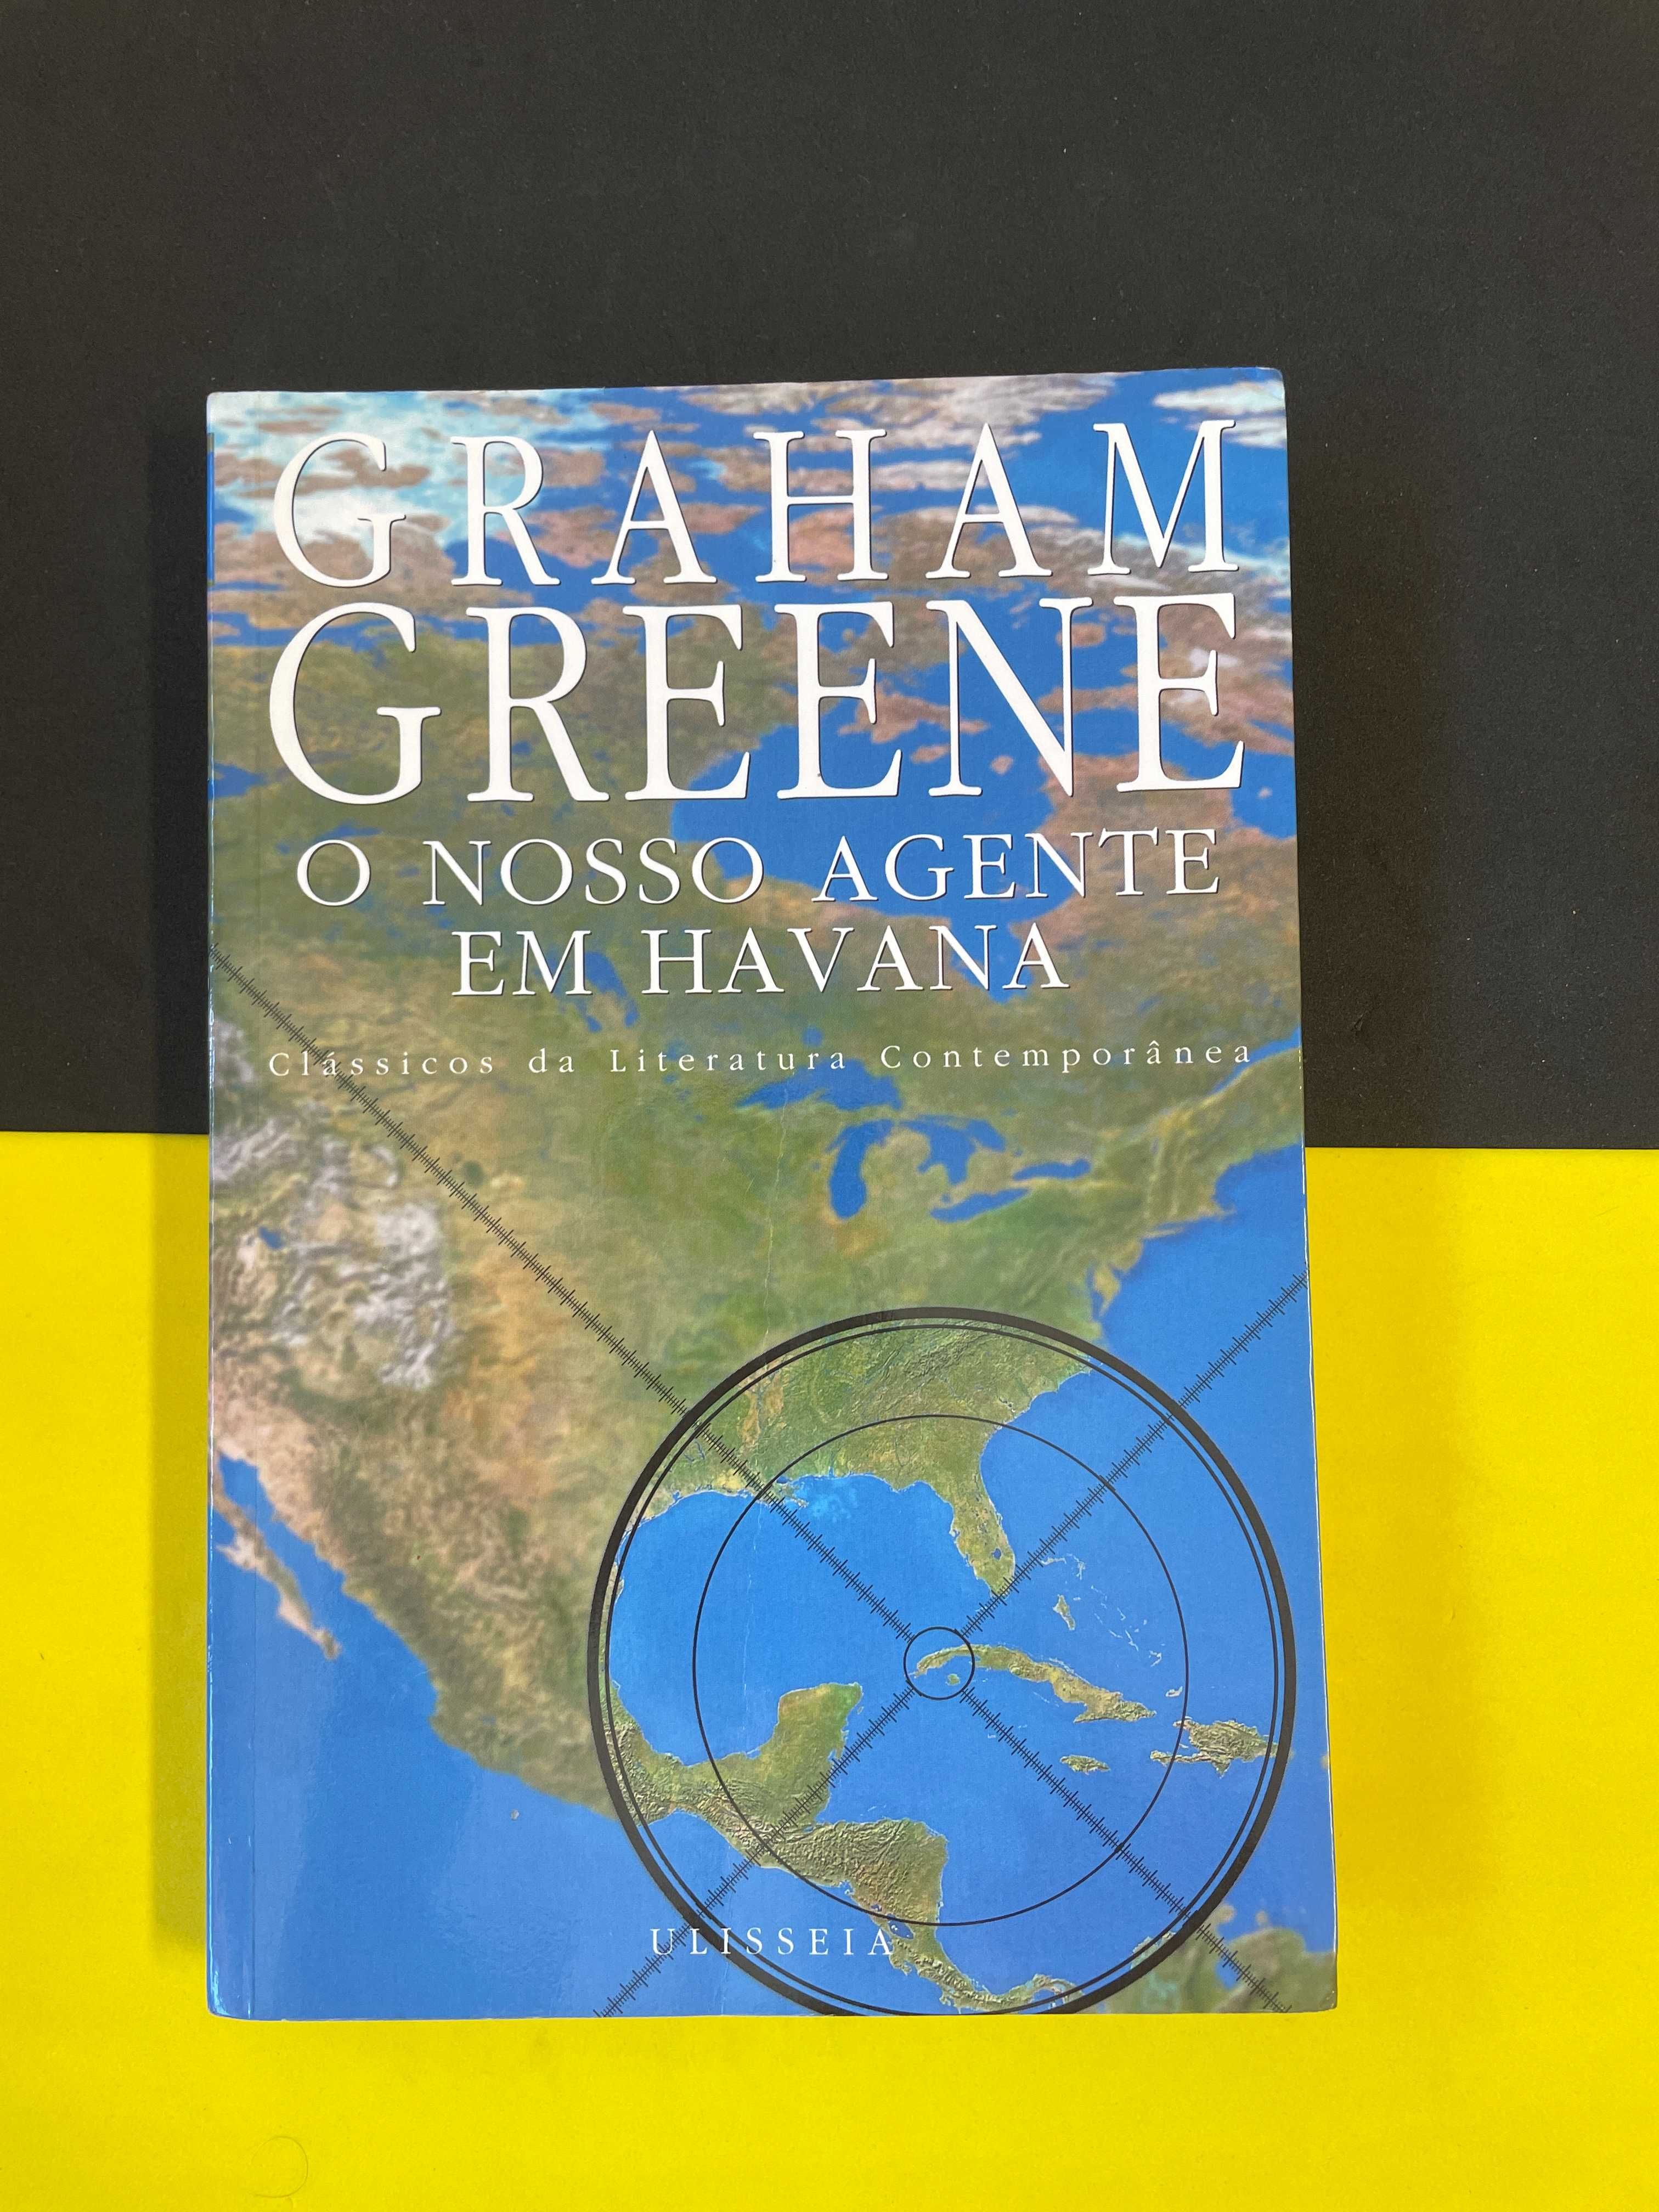 Graham Greene - O Nosso agente em Havana